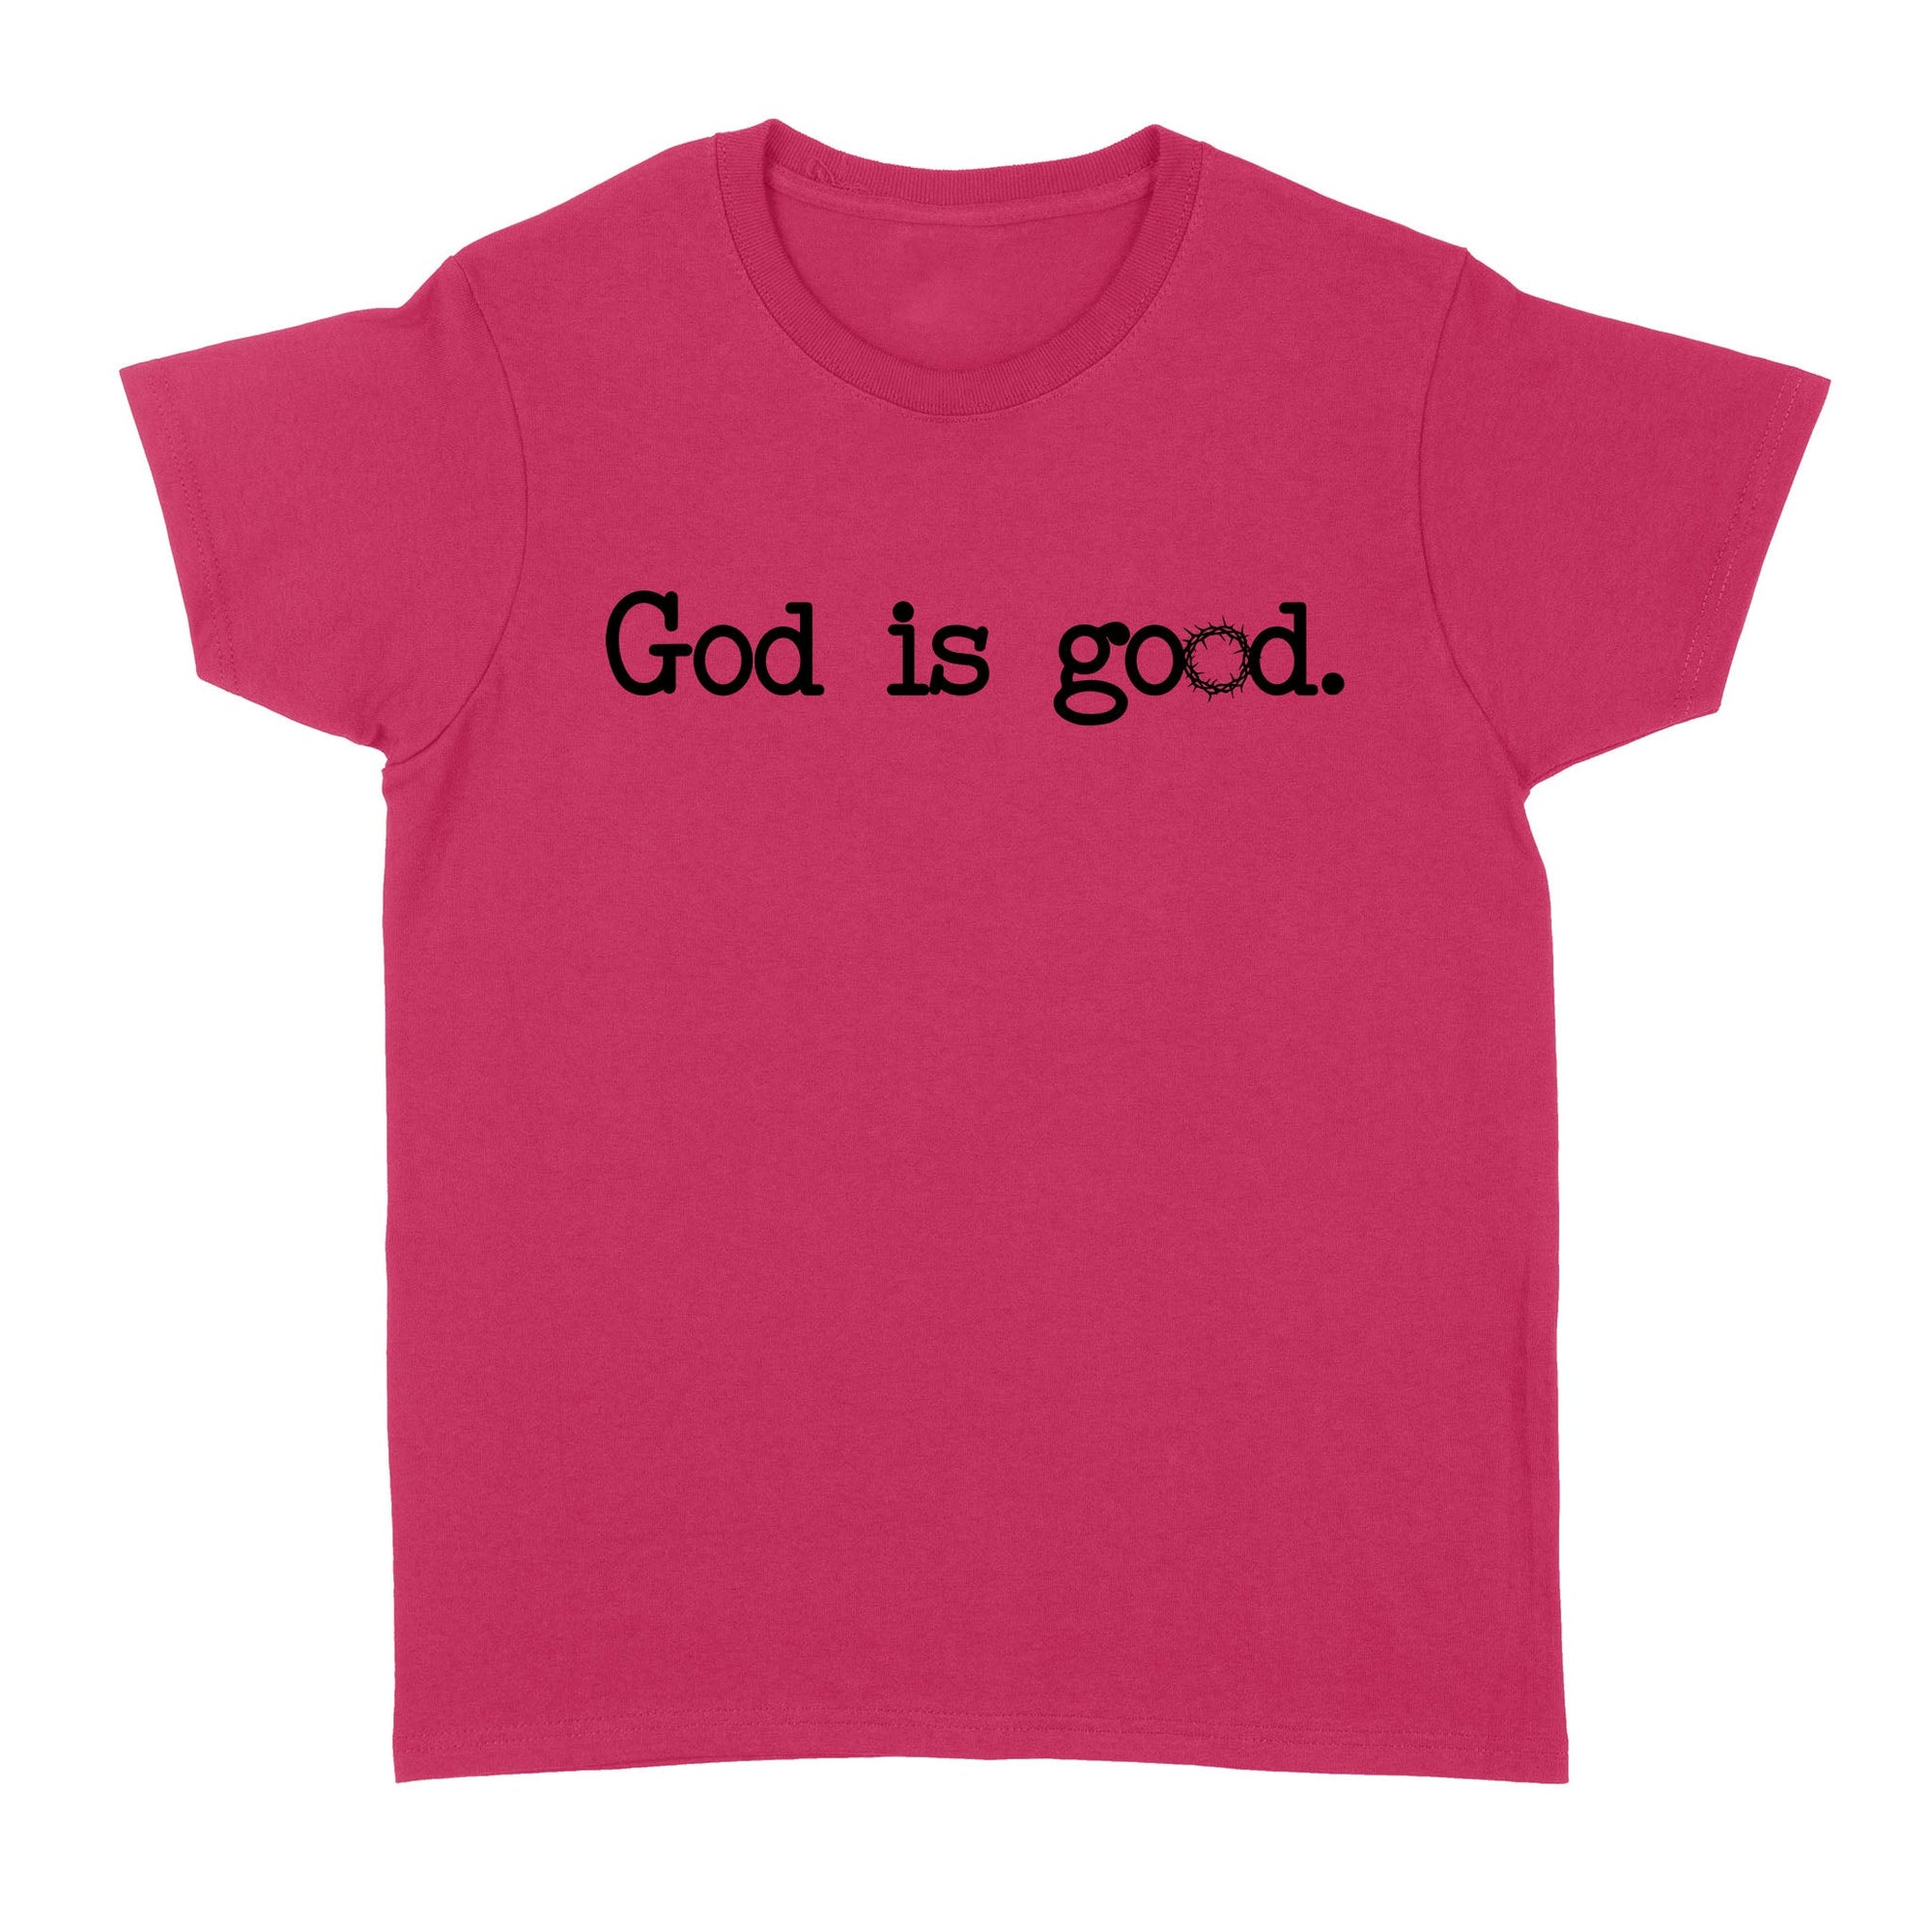 God is good - Standard Women's T-shirt